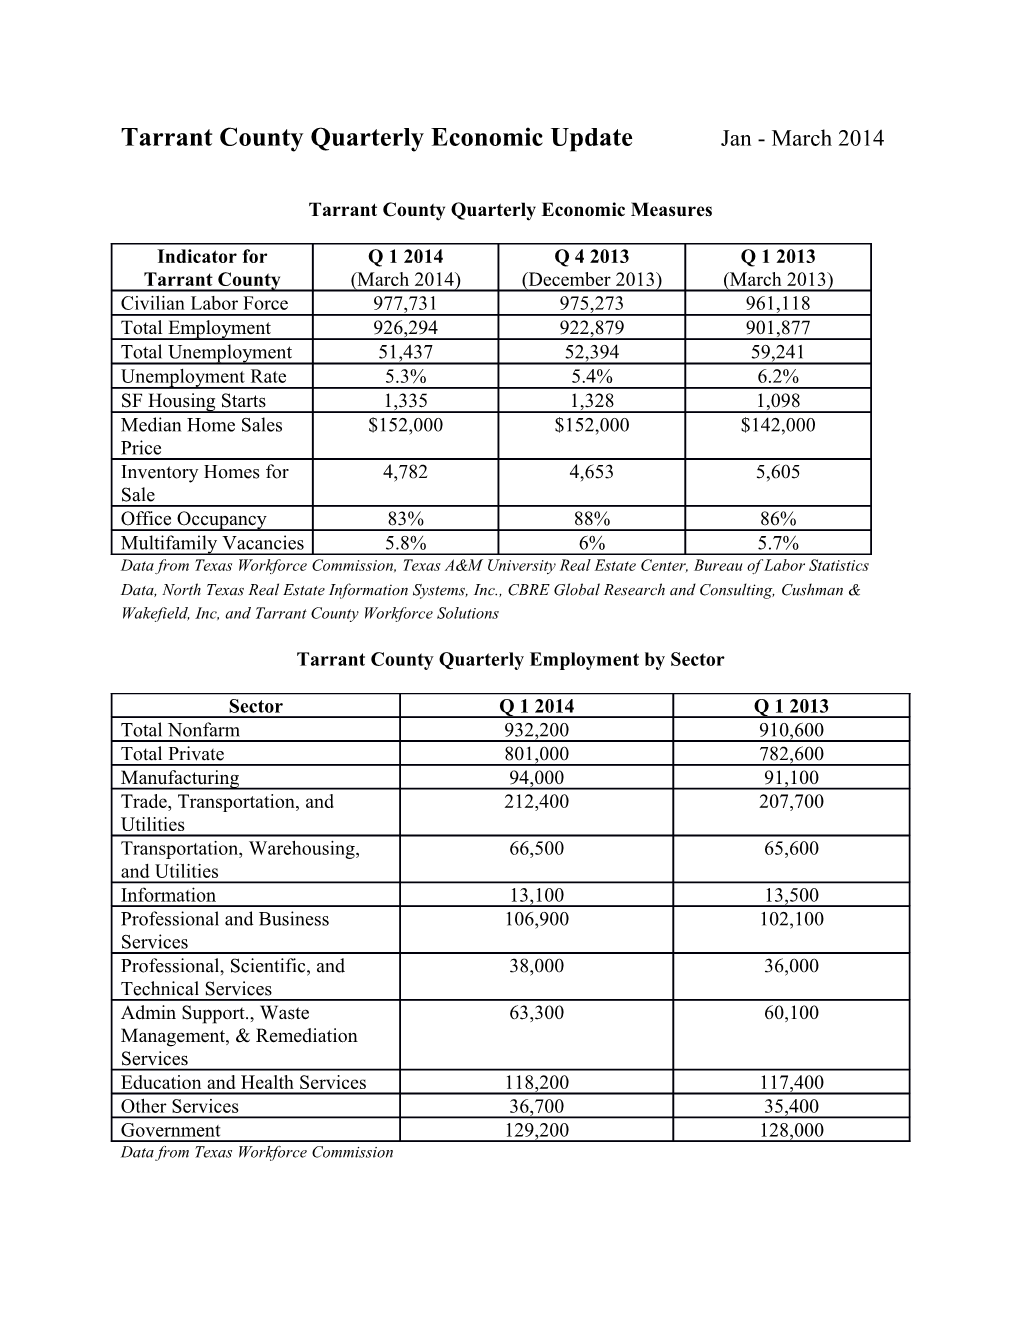 Tarrant County Quarterly Economic Measures